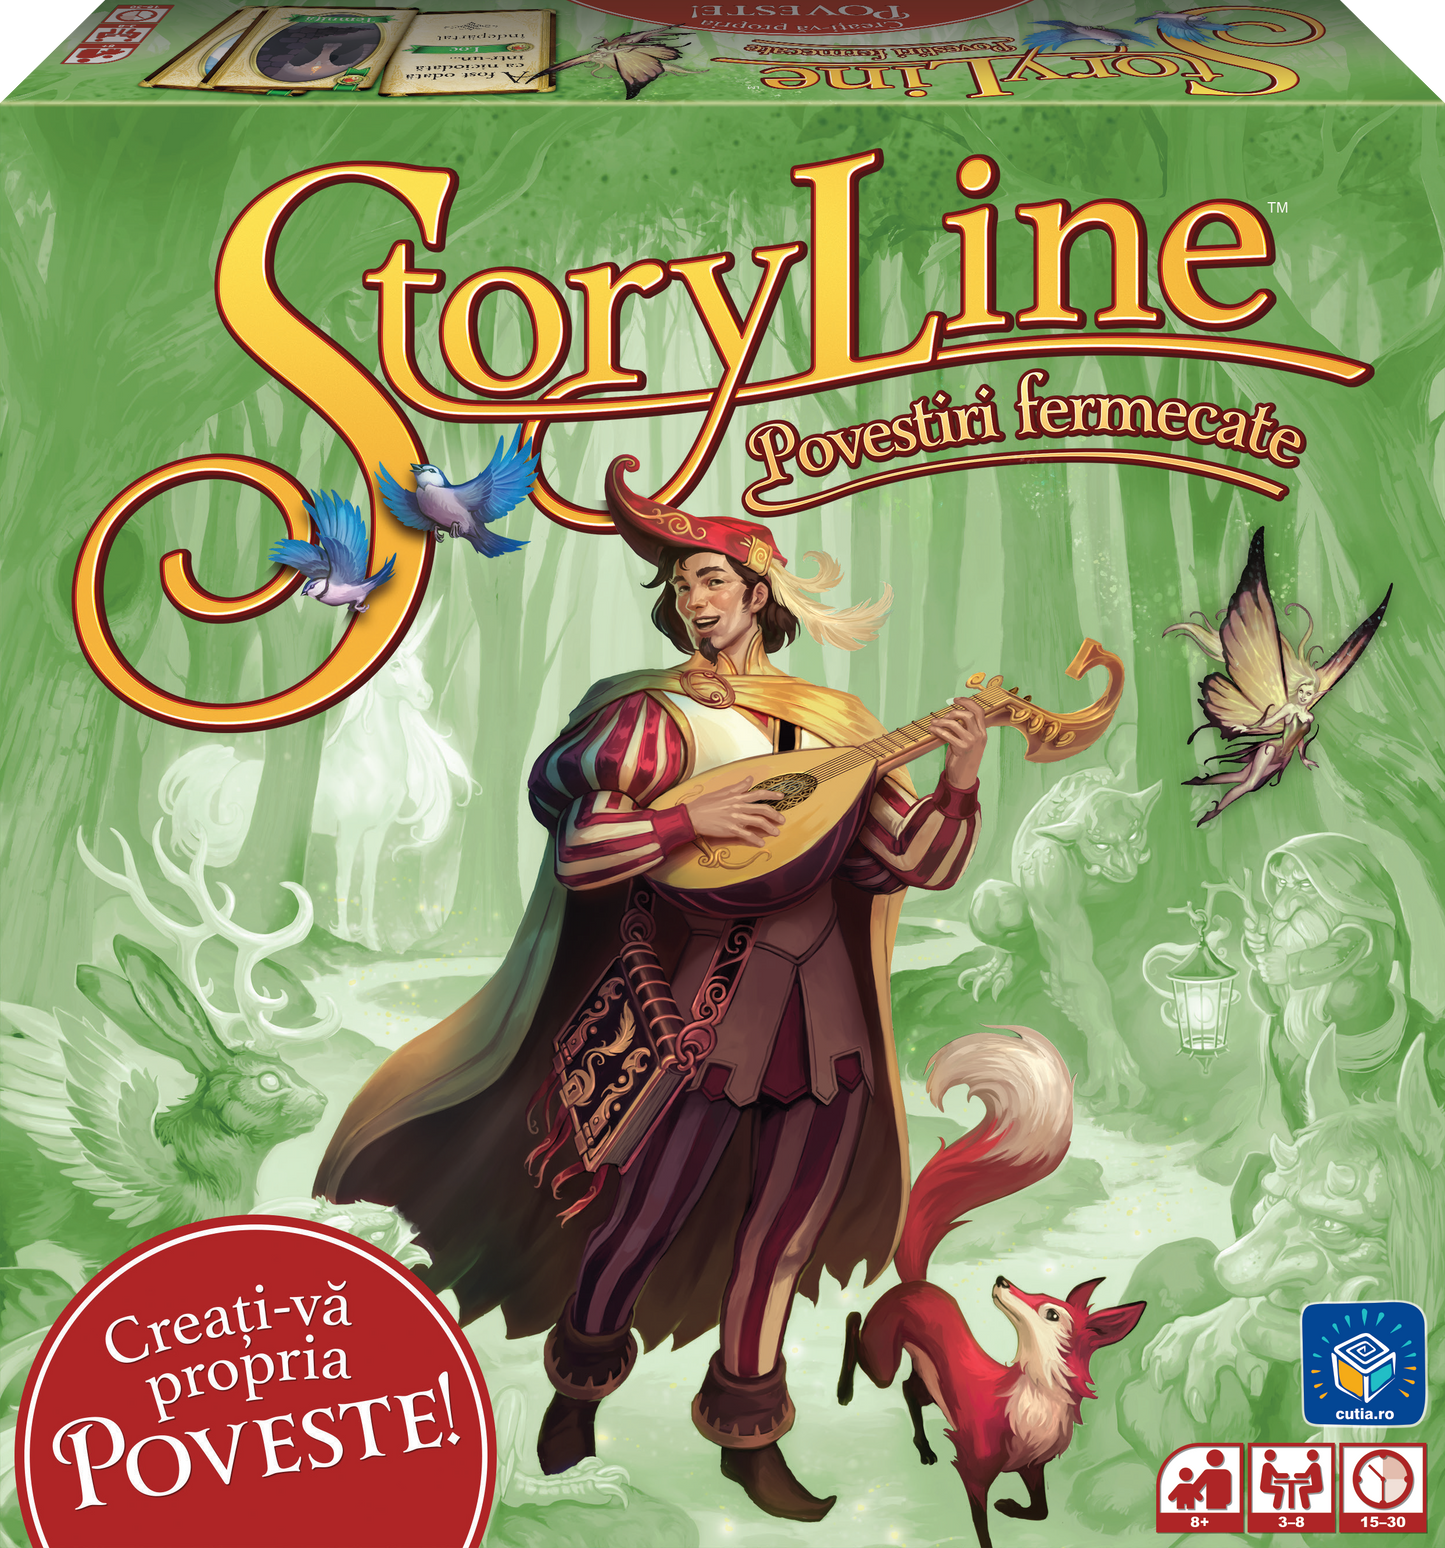 StoryLine - Povestiri fermecate